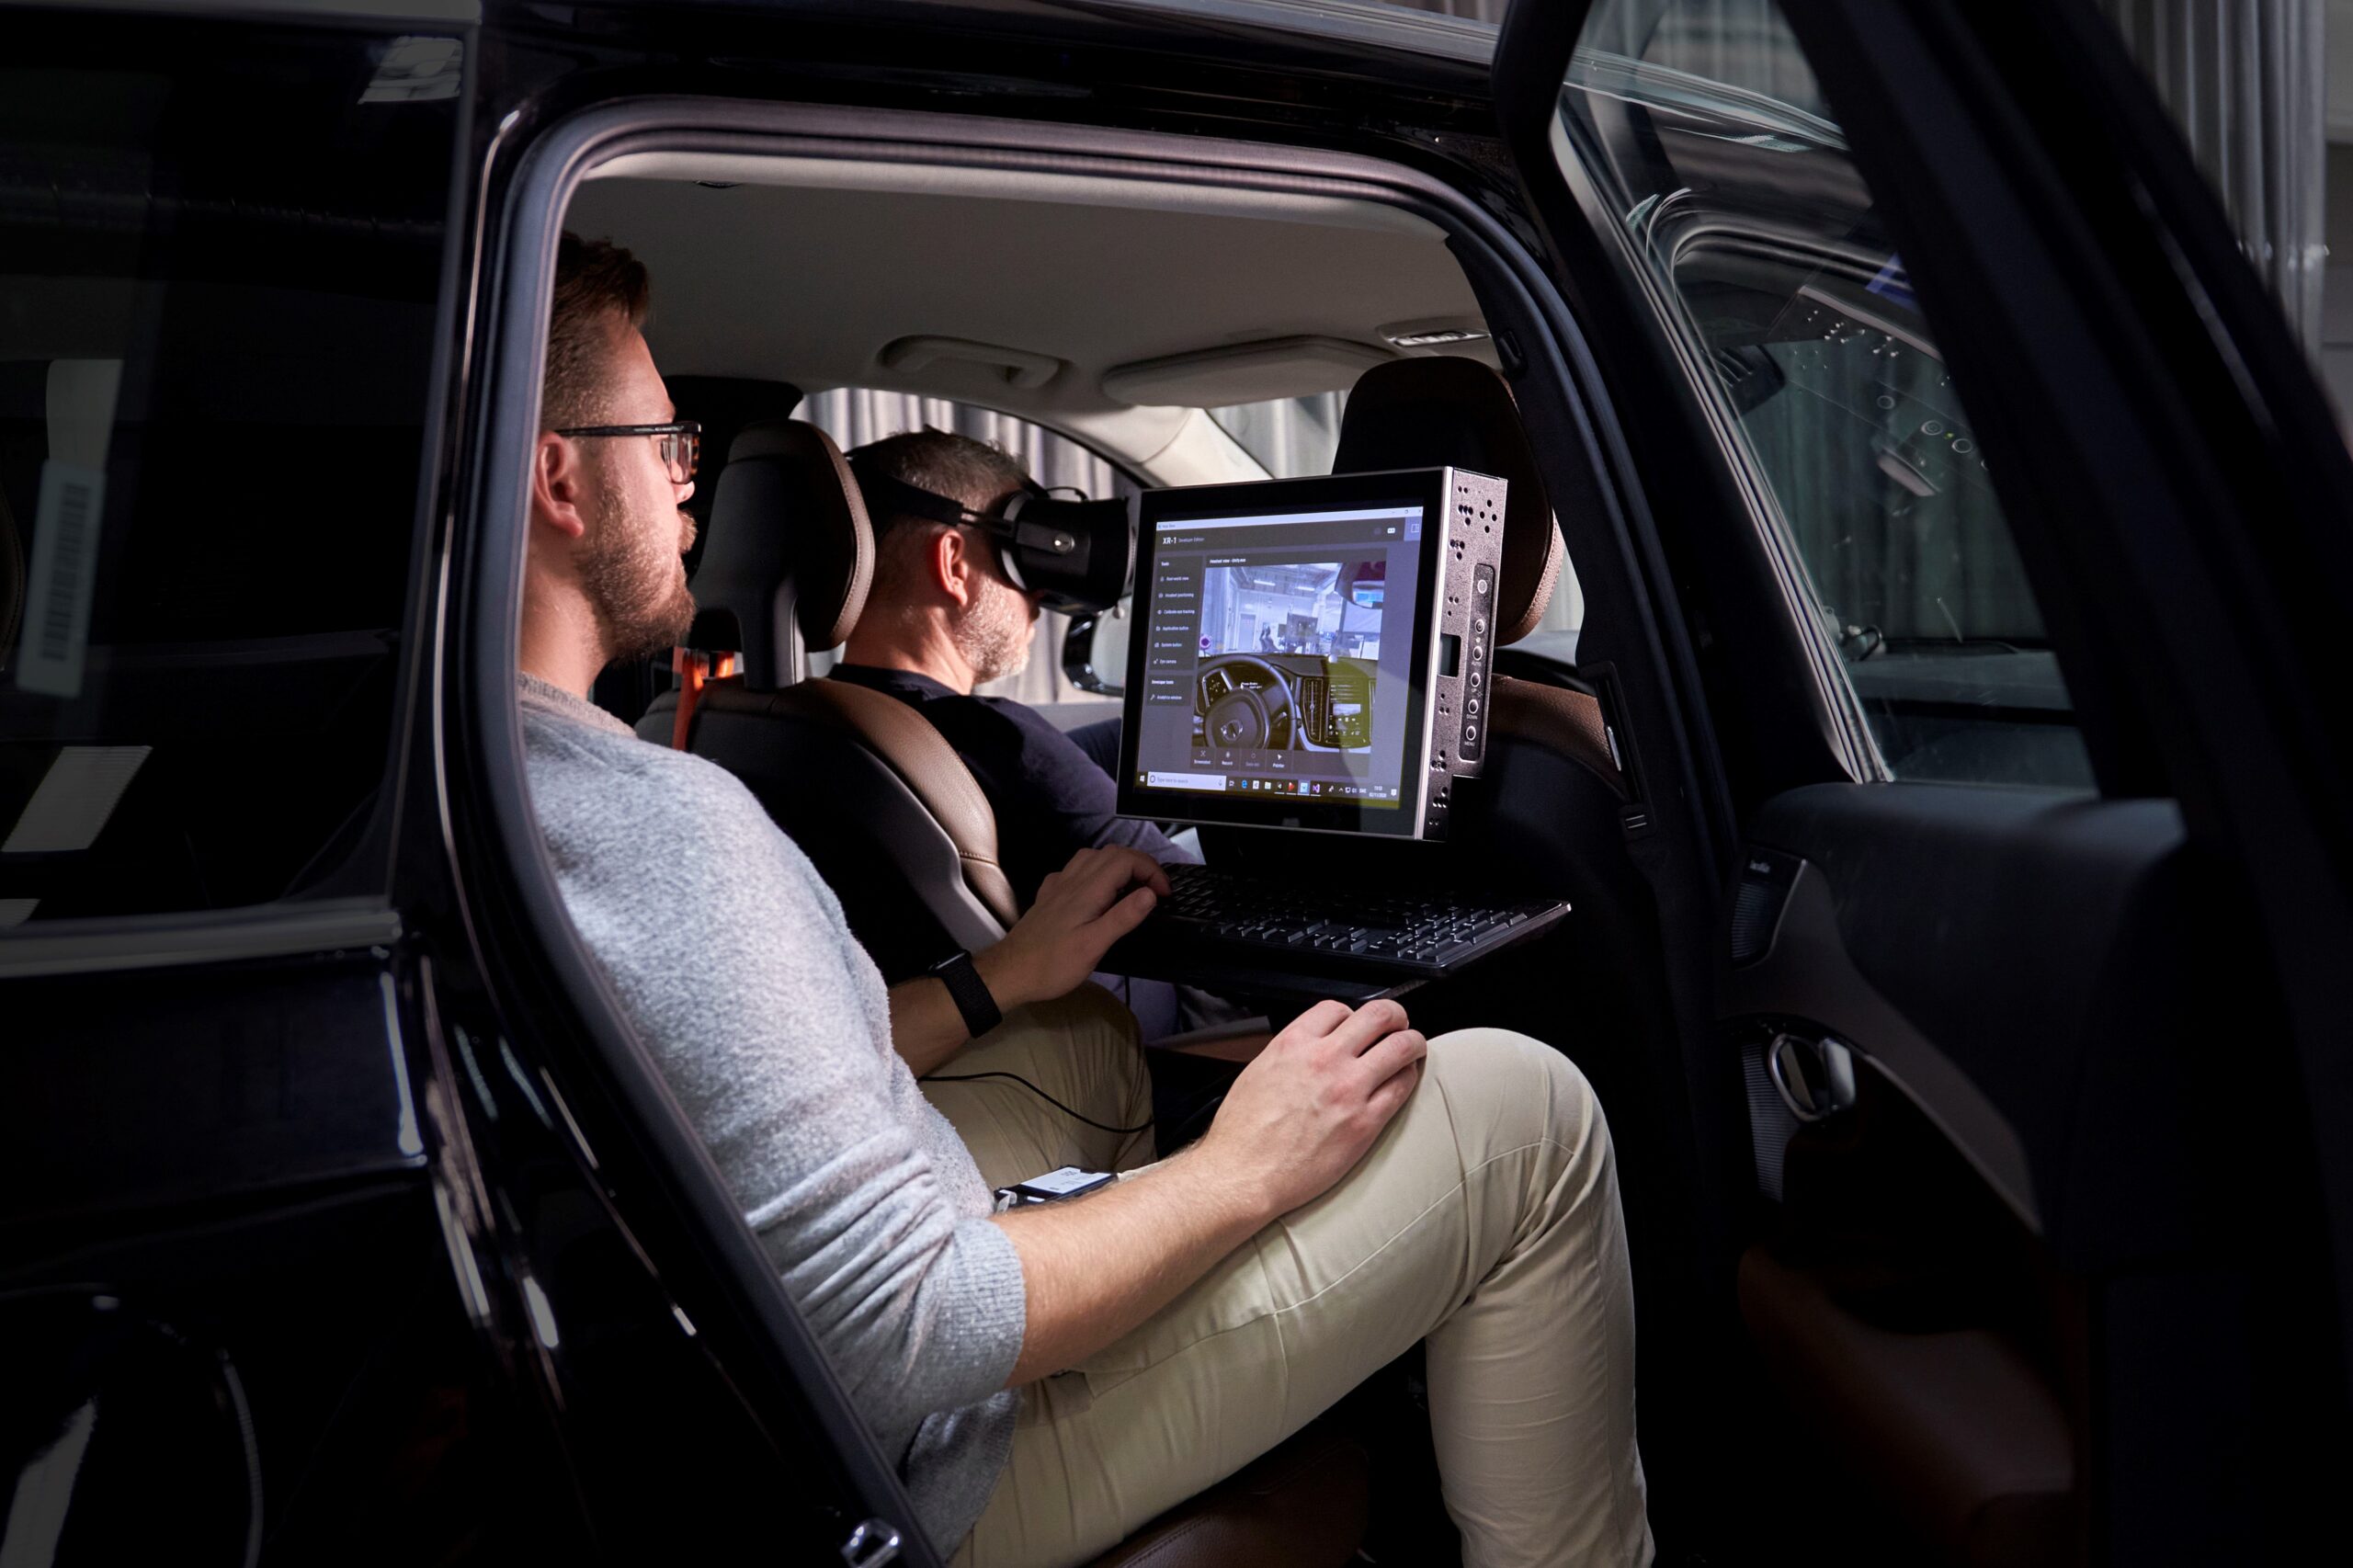 Soar alkohol Egnet Volvo Cars' "ultimative køresimulator" bruger den nyeste gaming-teknologi  til at udvikle sikrere biler | IT-Kanalen